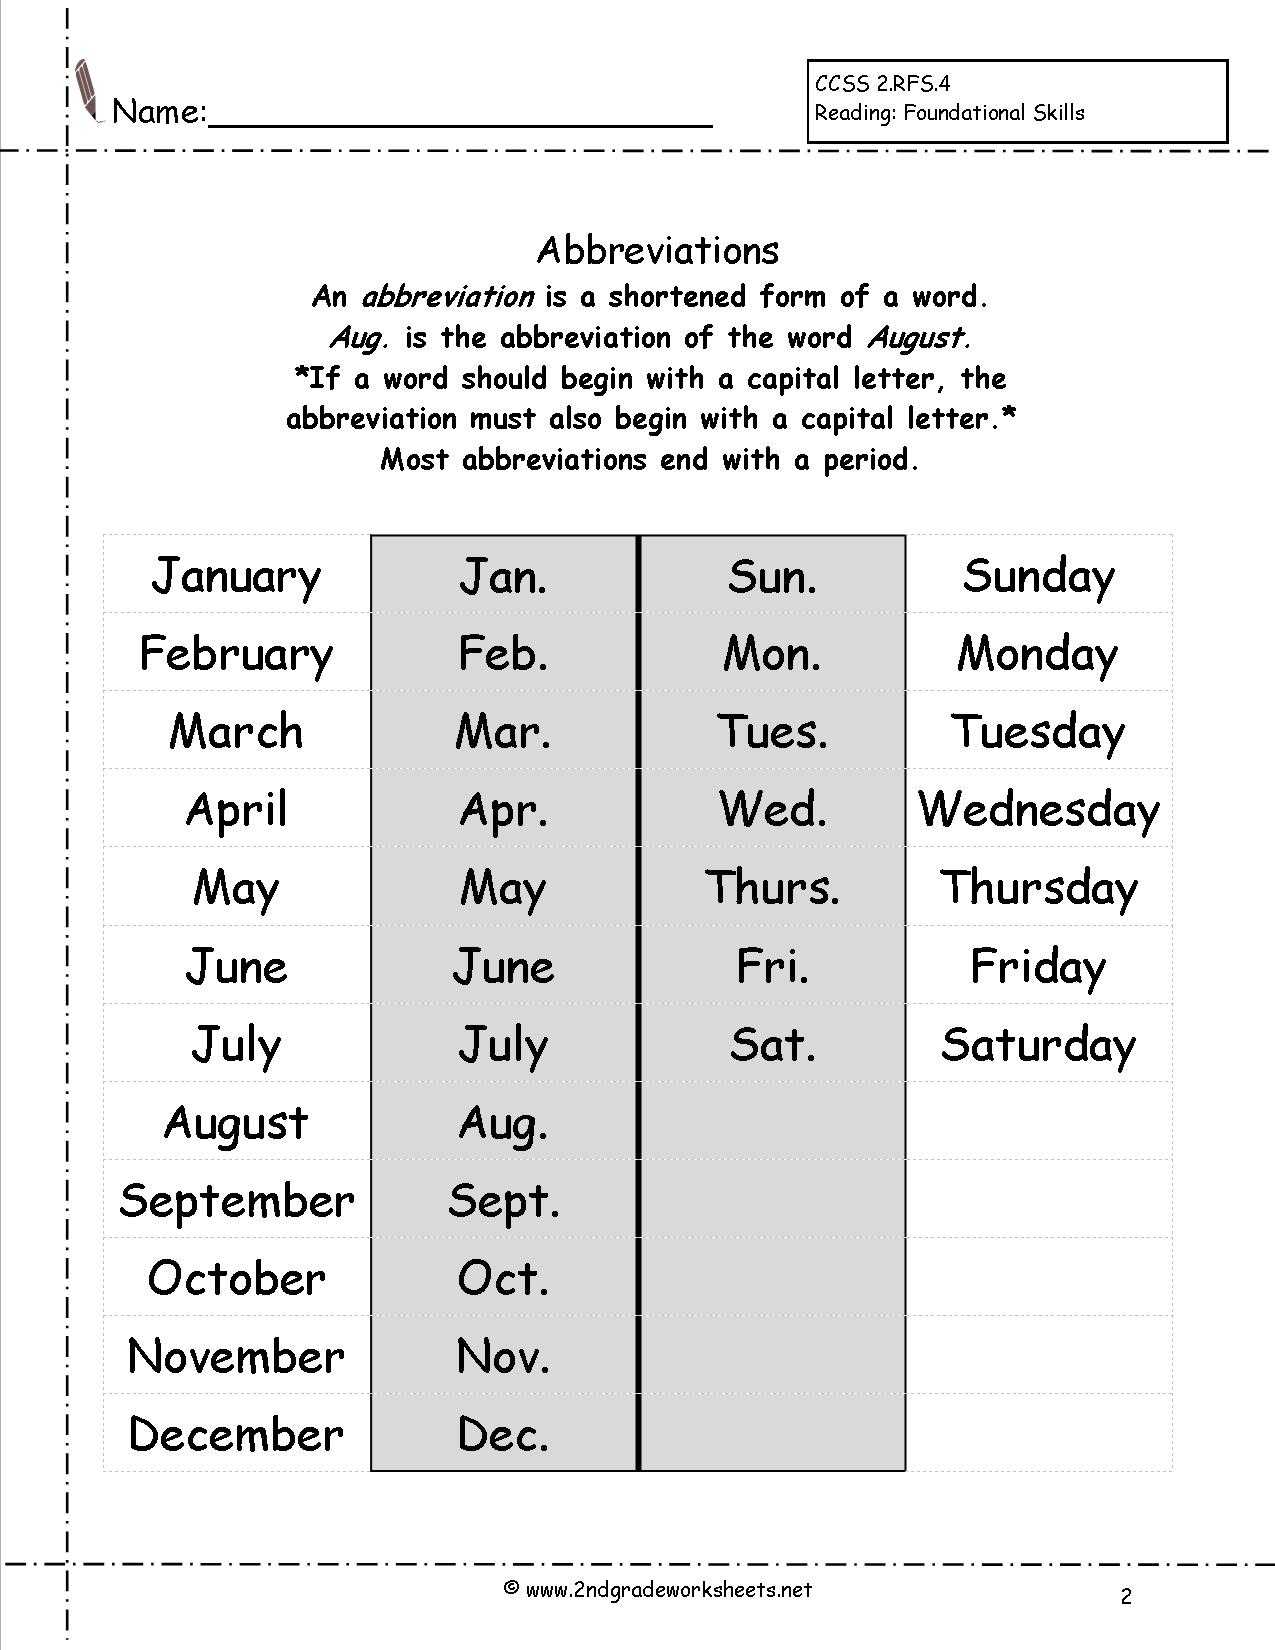 Thirteen Days Worksheet Answers Also Calendar Months and Days Worksheets the Best Worksheets Image